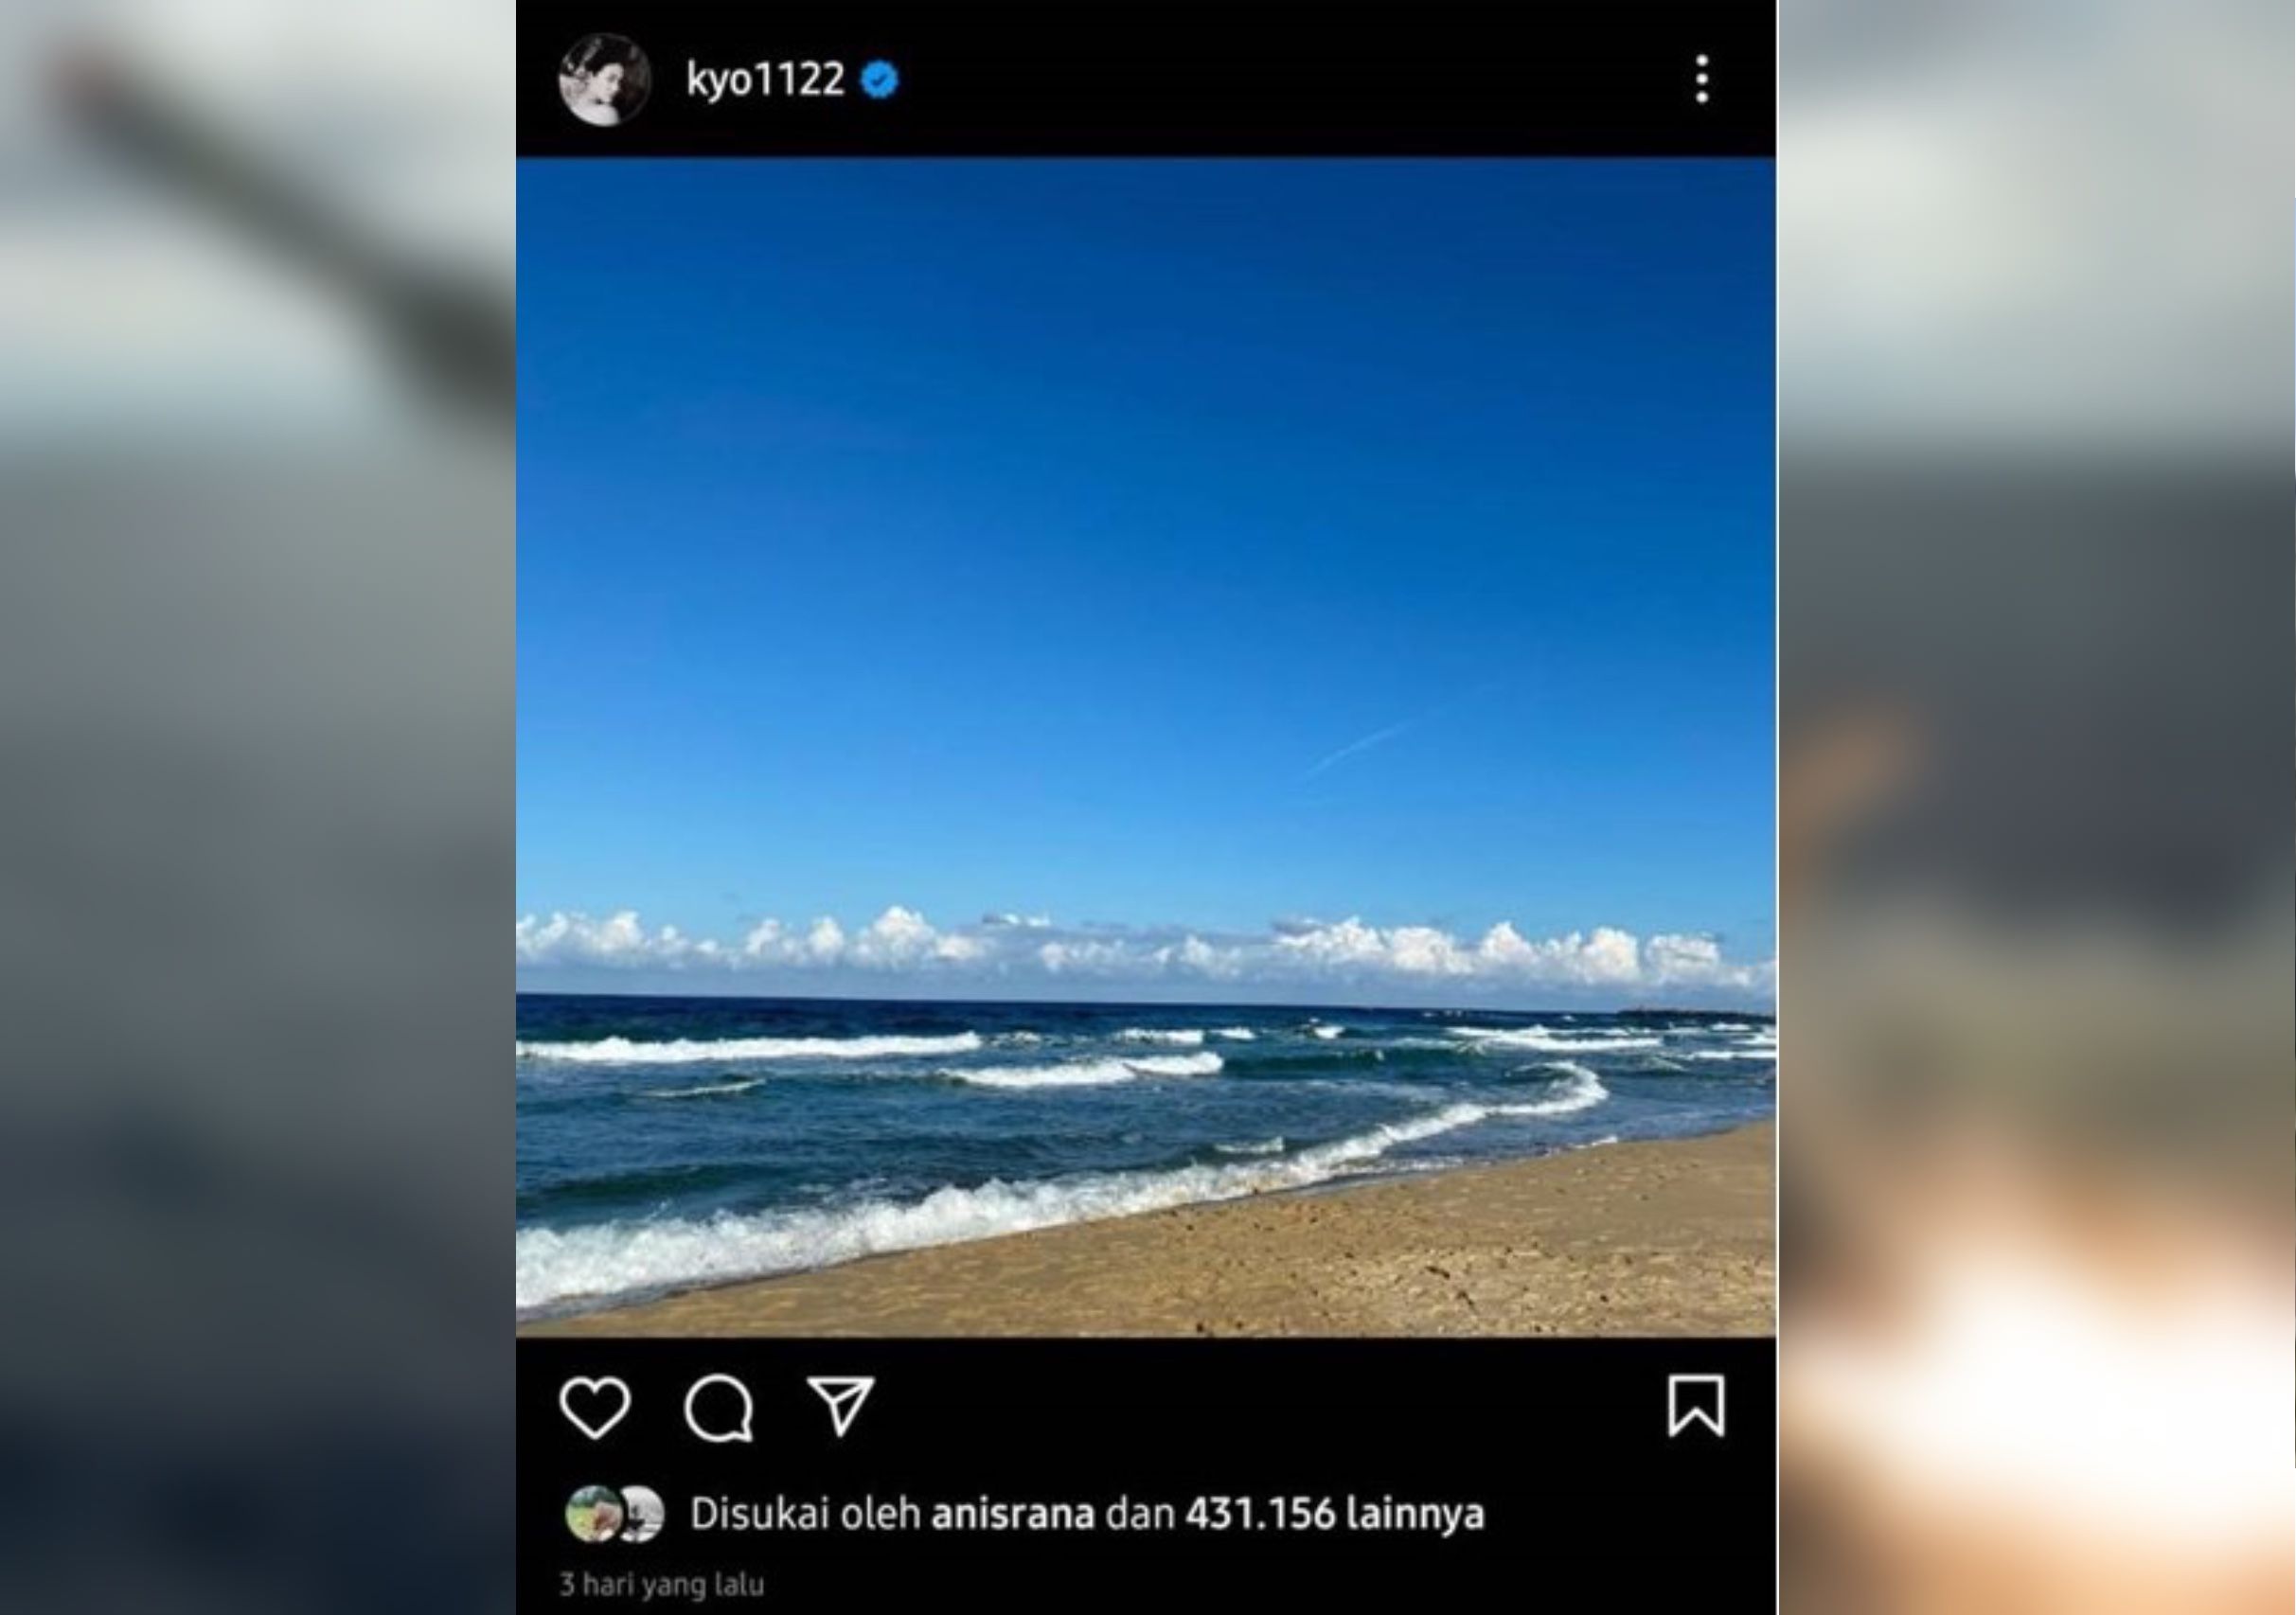  Song Hye Kyo memposting sebuah foto berlatar laut tanpa caption di Instagram pada hari ulang tahun Song Joong Ki.